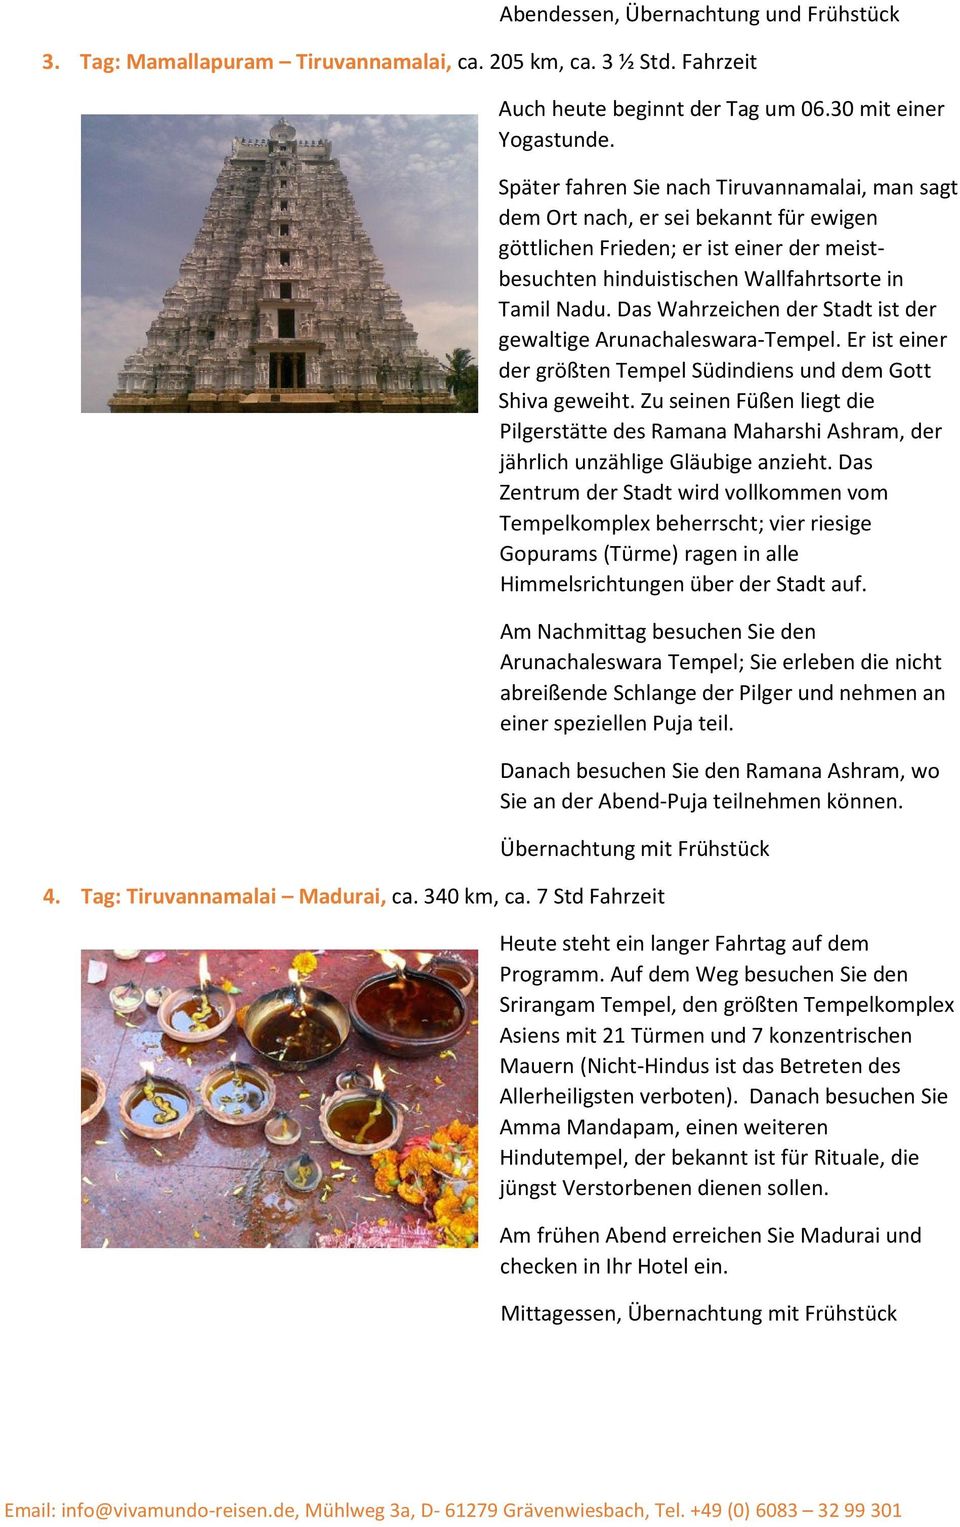 Das Wahrzeichen der Stadt ist der gewaltige Arunachaleswara-Tempel. Er ist einer der größten Tempel Südindiens und dem Gott Shiva geweiht.